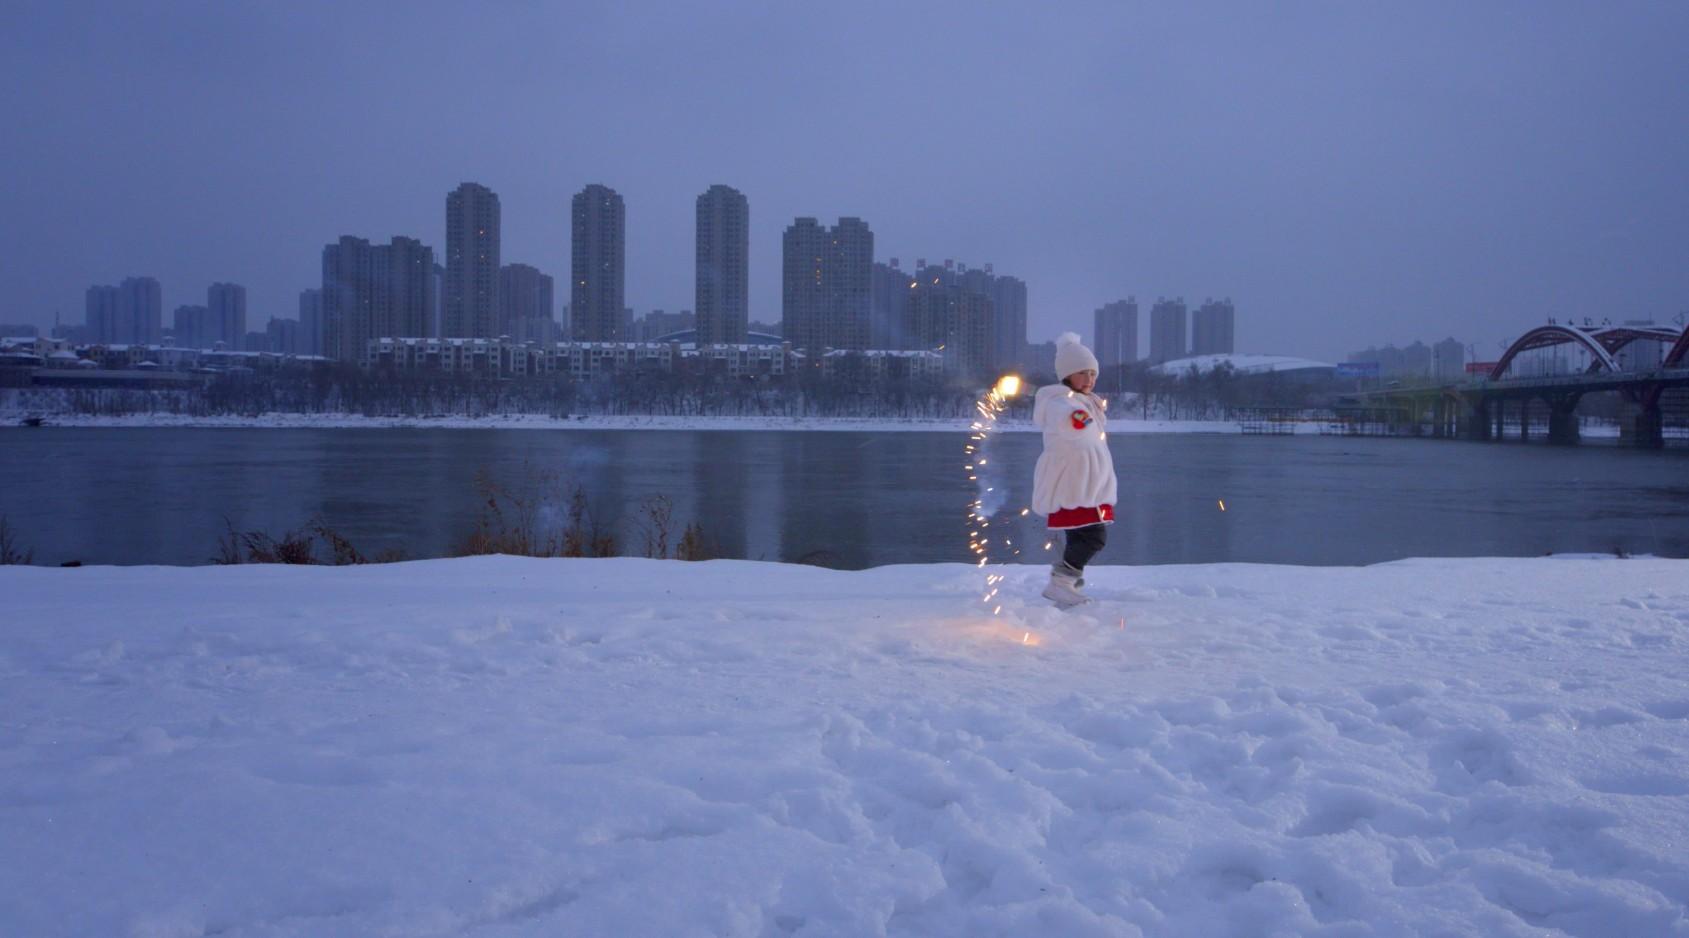 25届中国吉林国际雾凇冰雪节开幕式宣传片